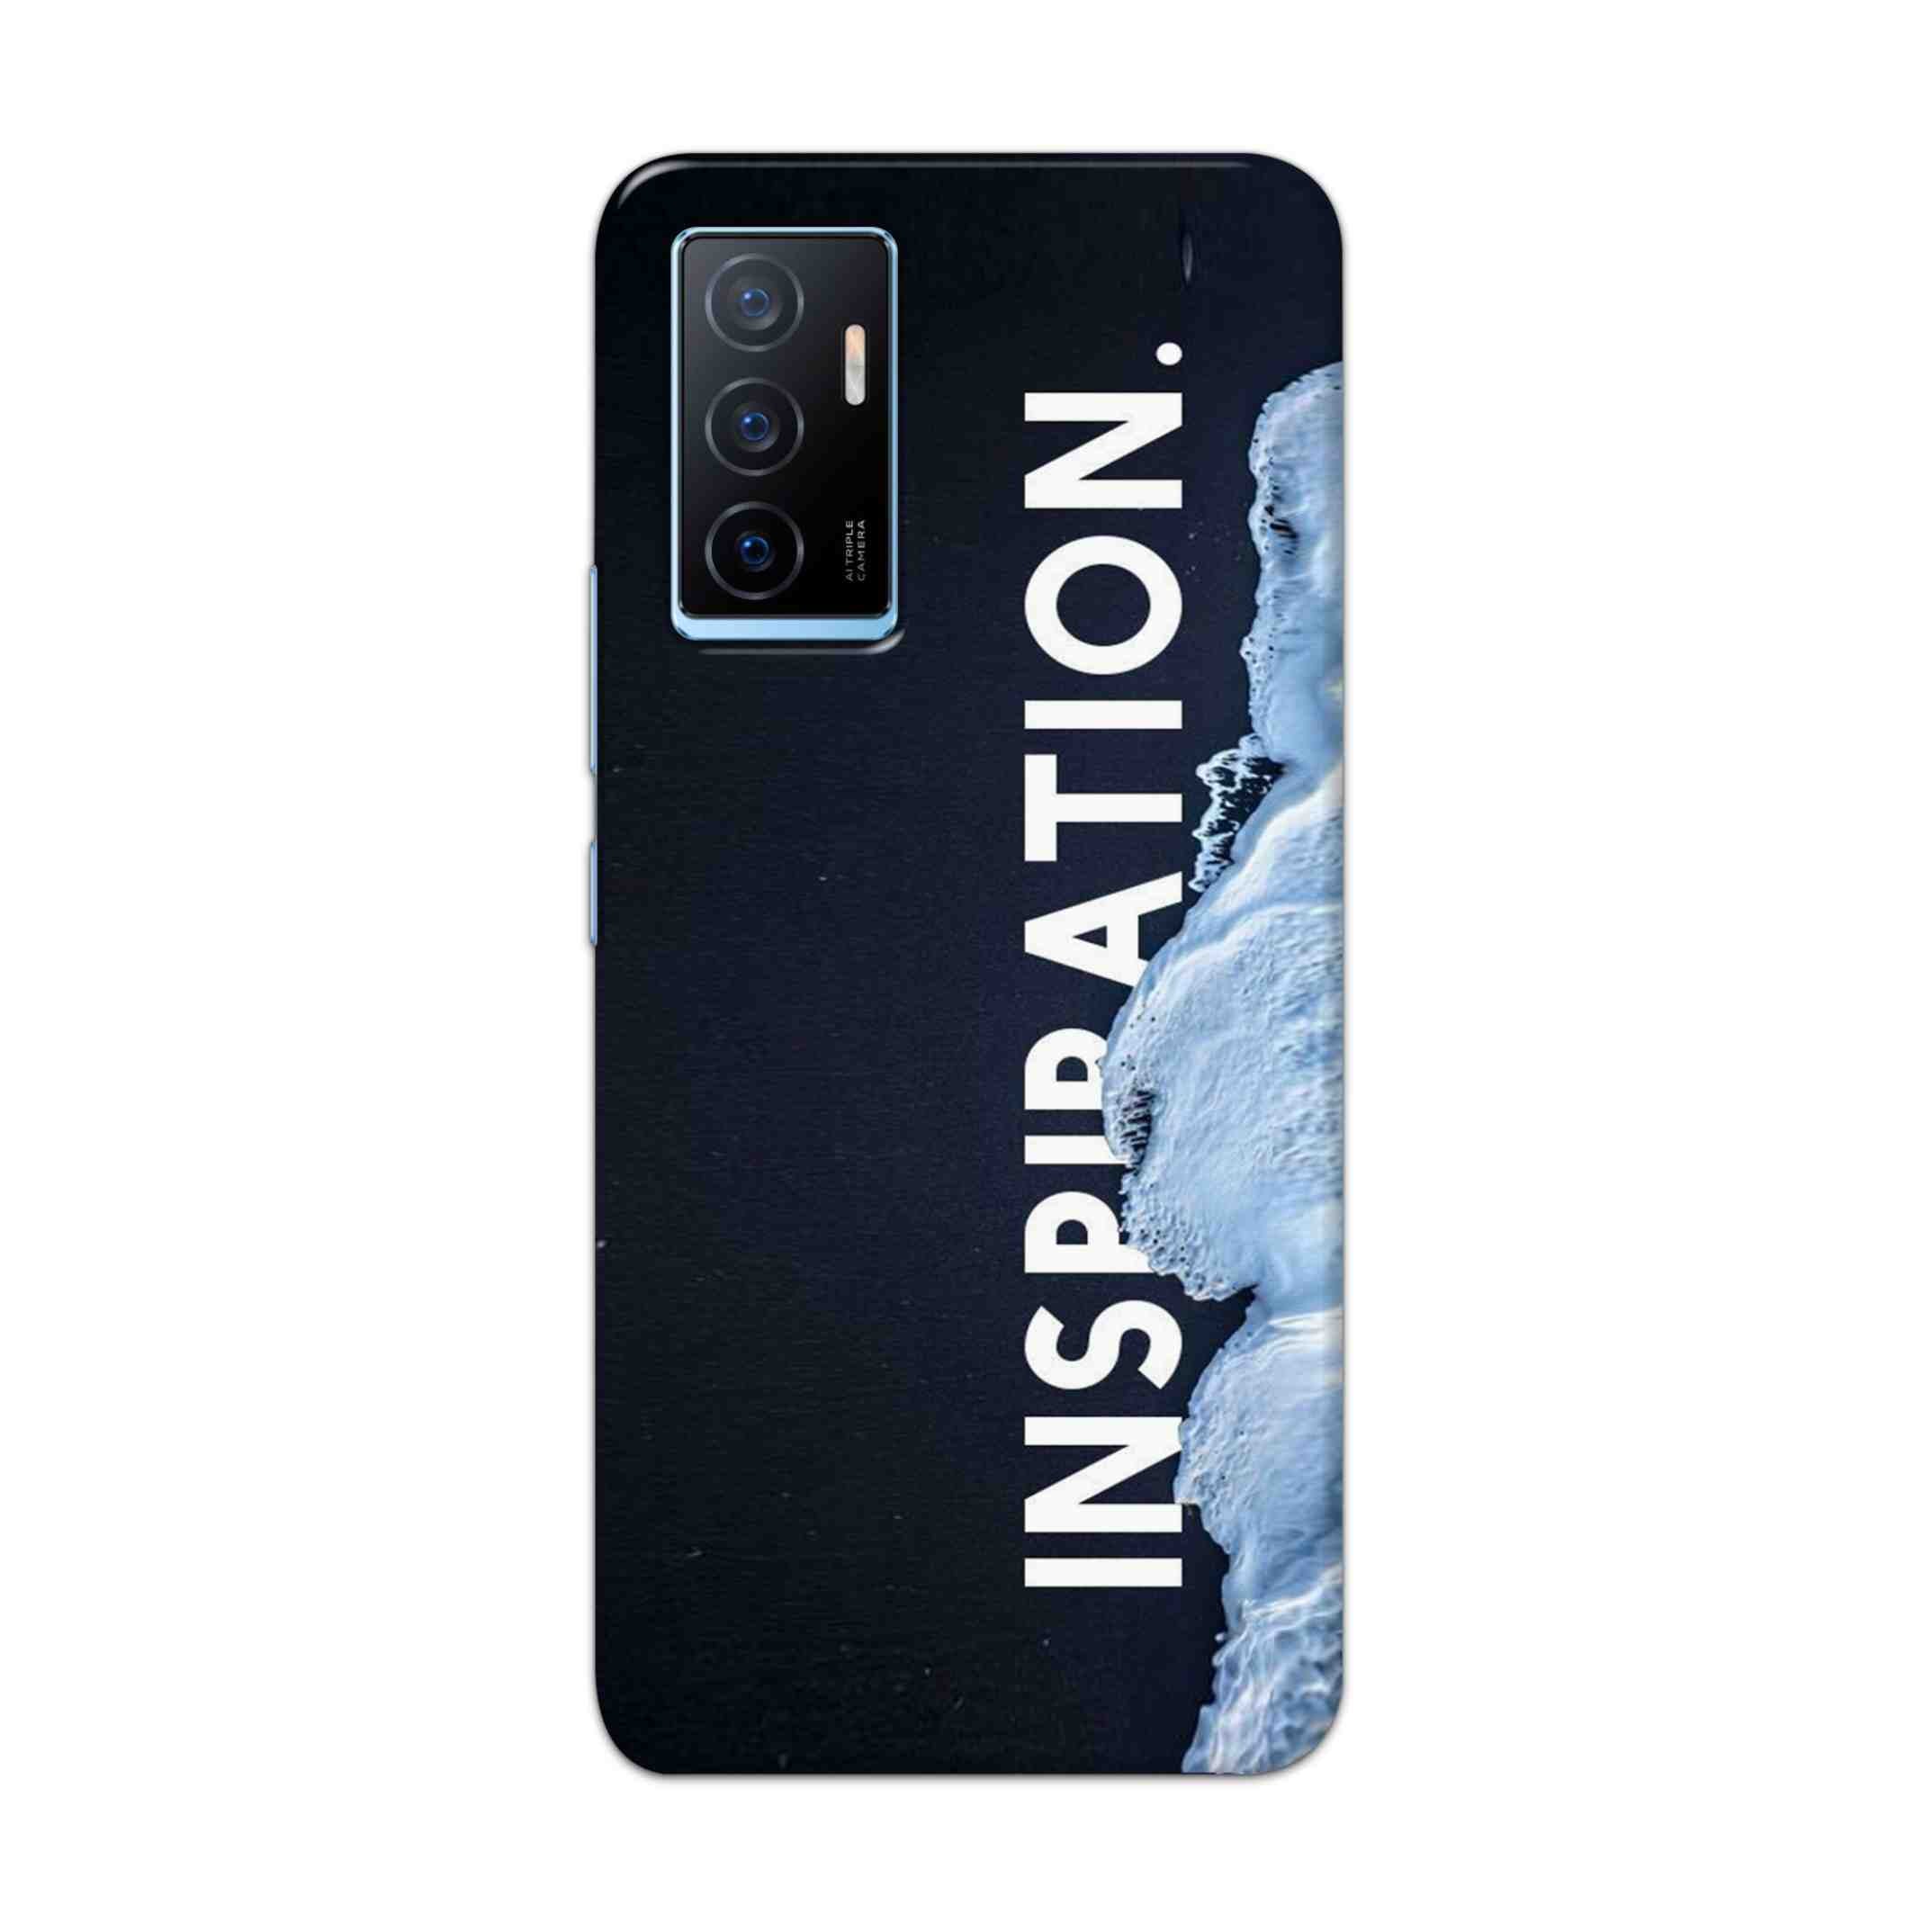 Buy Inspiration Hard Back Mobile Phone Case Cover For Vivo Y75 4G Online